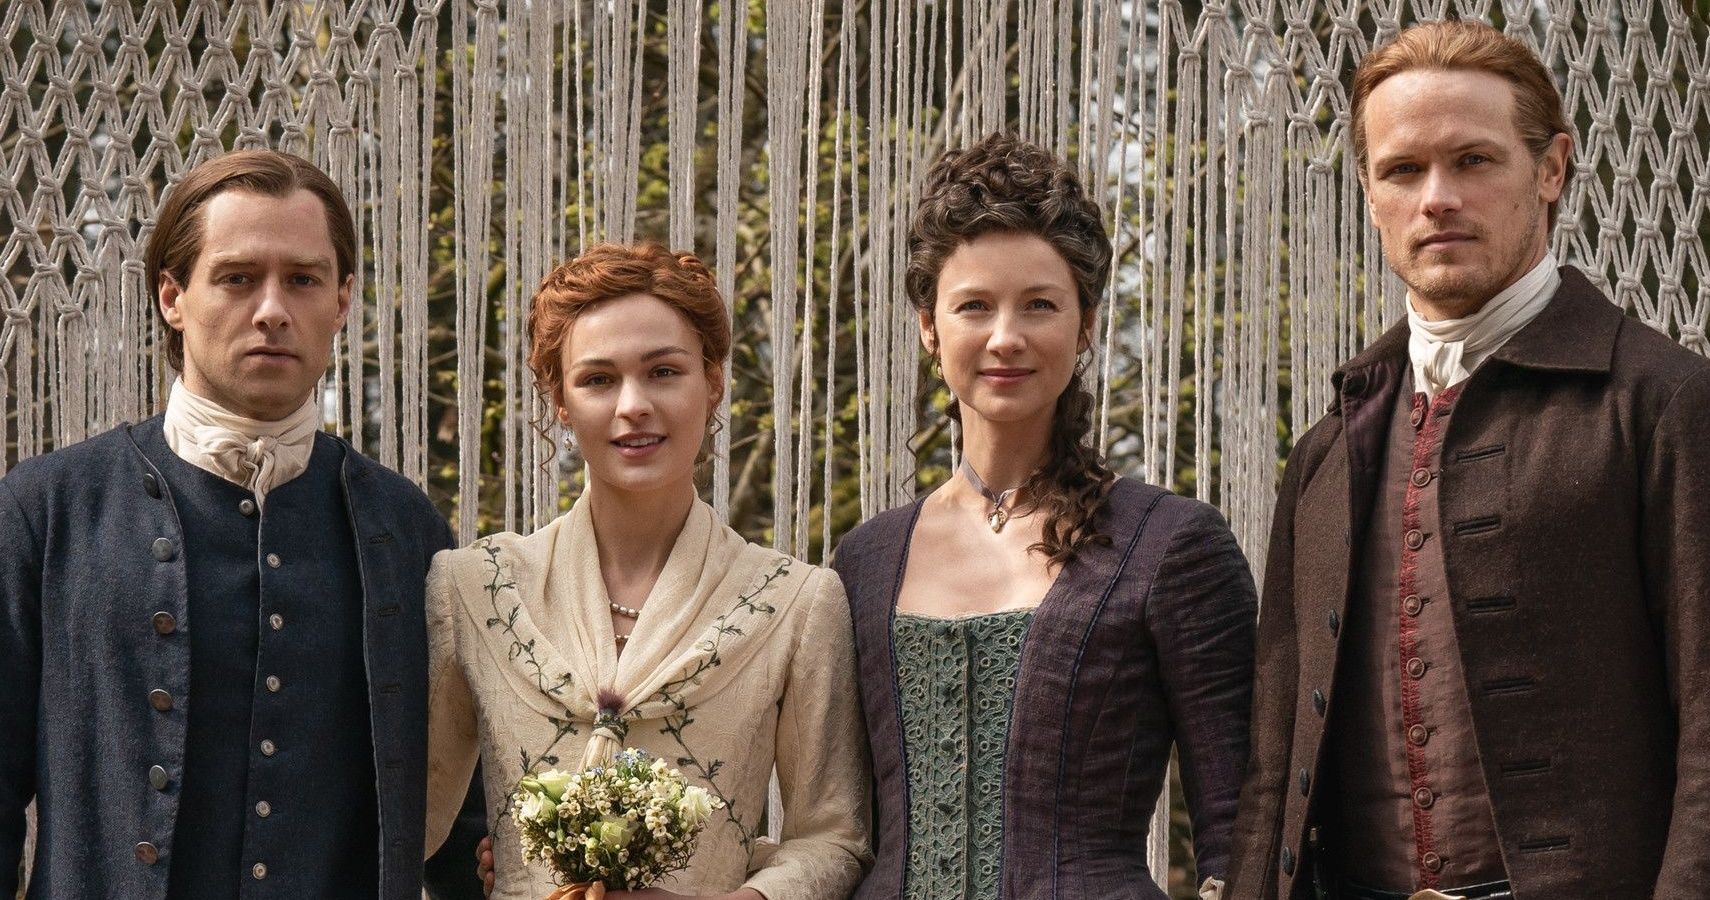 Outlander: Season 5 Episodes, Ranked According To IMDb